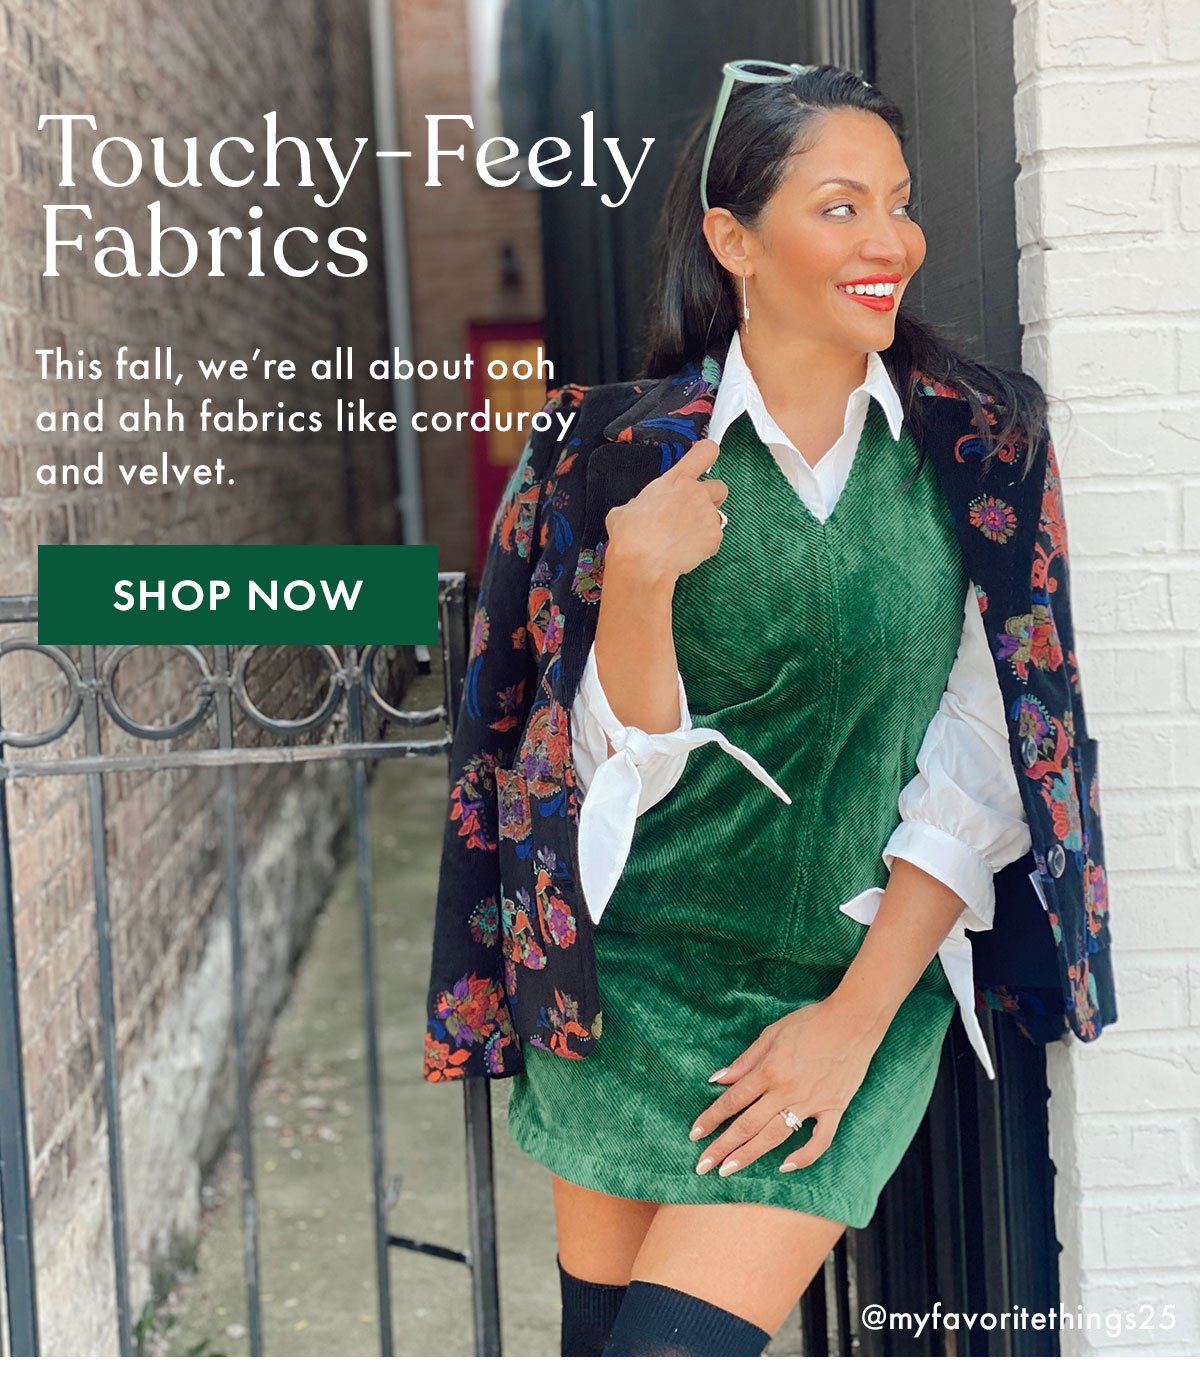 Touchy-Feely Fabrics